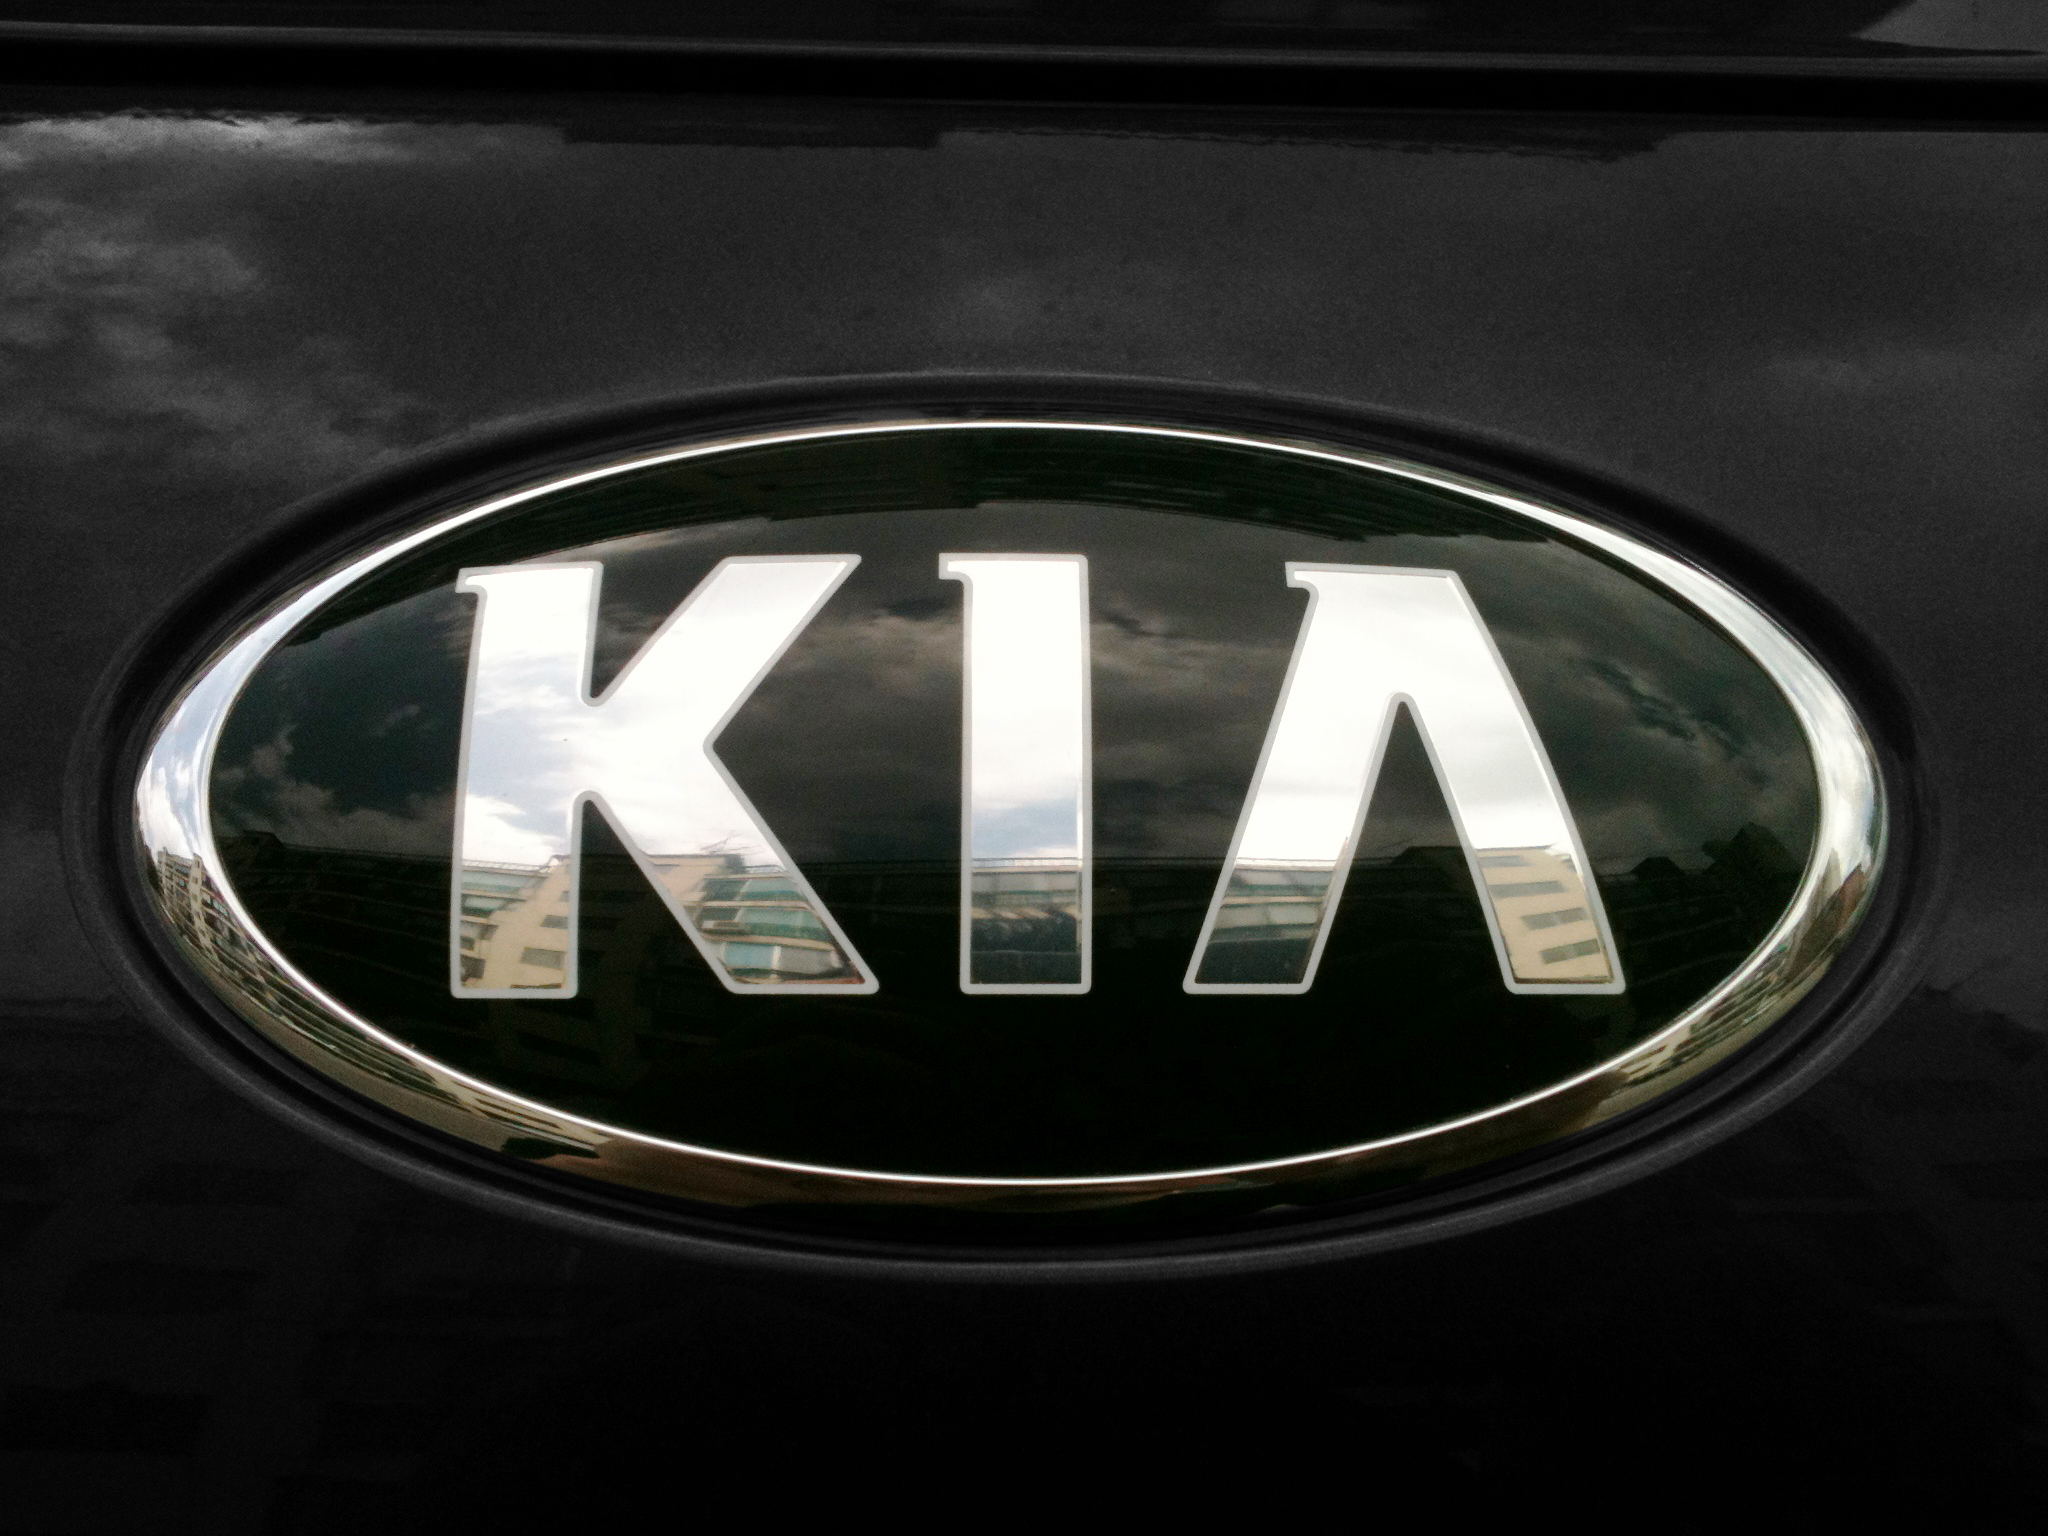 Kia Car Hd Images